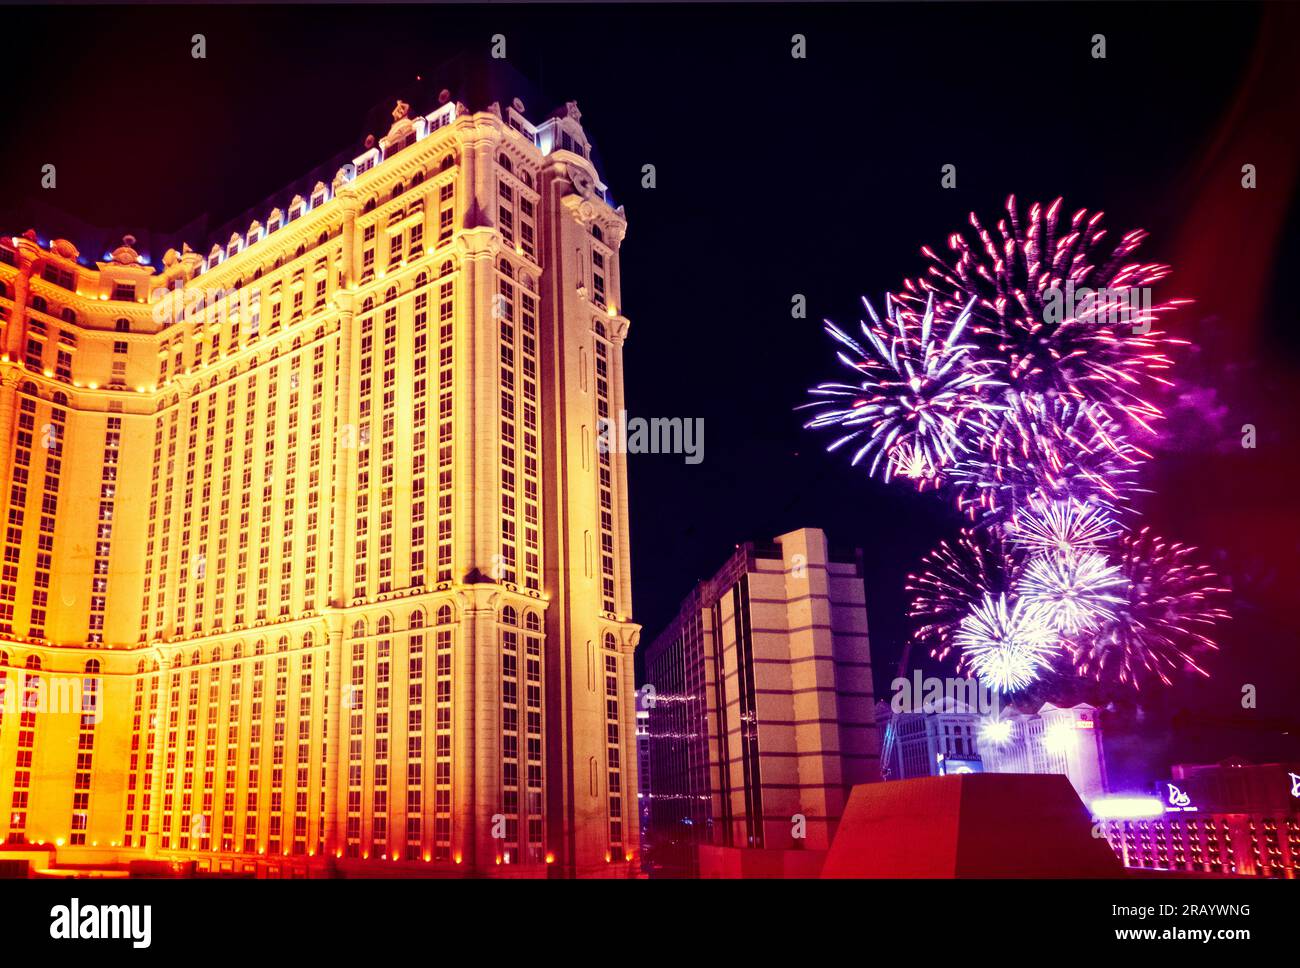 Feu d'artifice du 4 juillet au Paris Hotel and Casino Las Vegas Nevada USA Banque D'Images